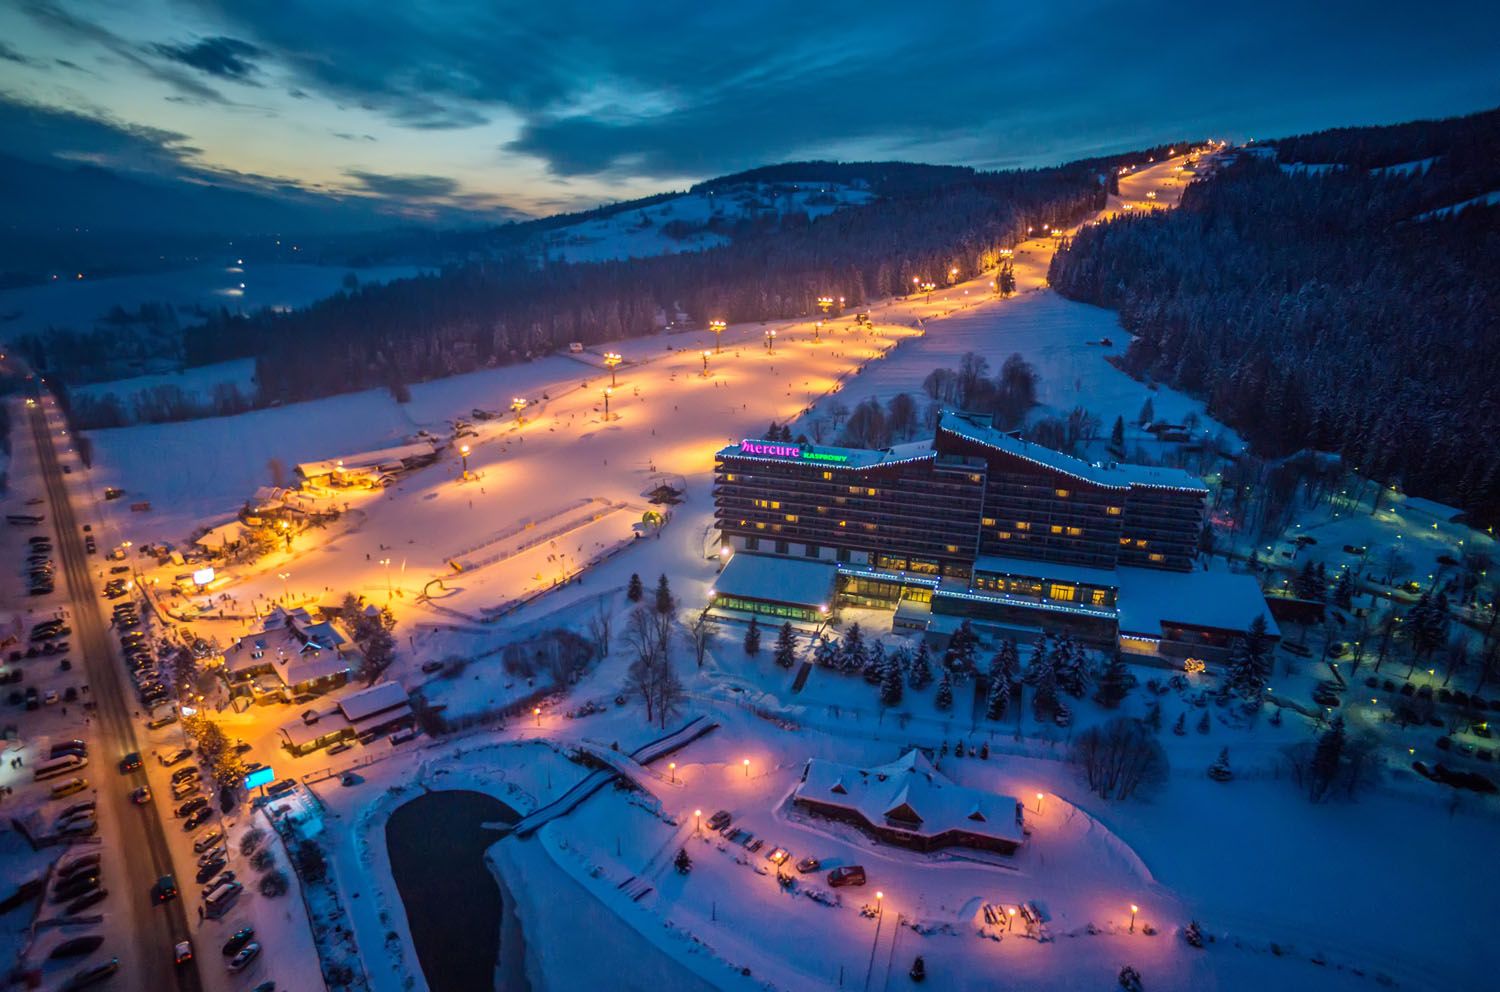 Szymoszkowa Glade Ski Station